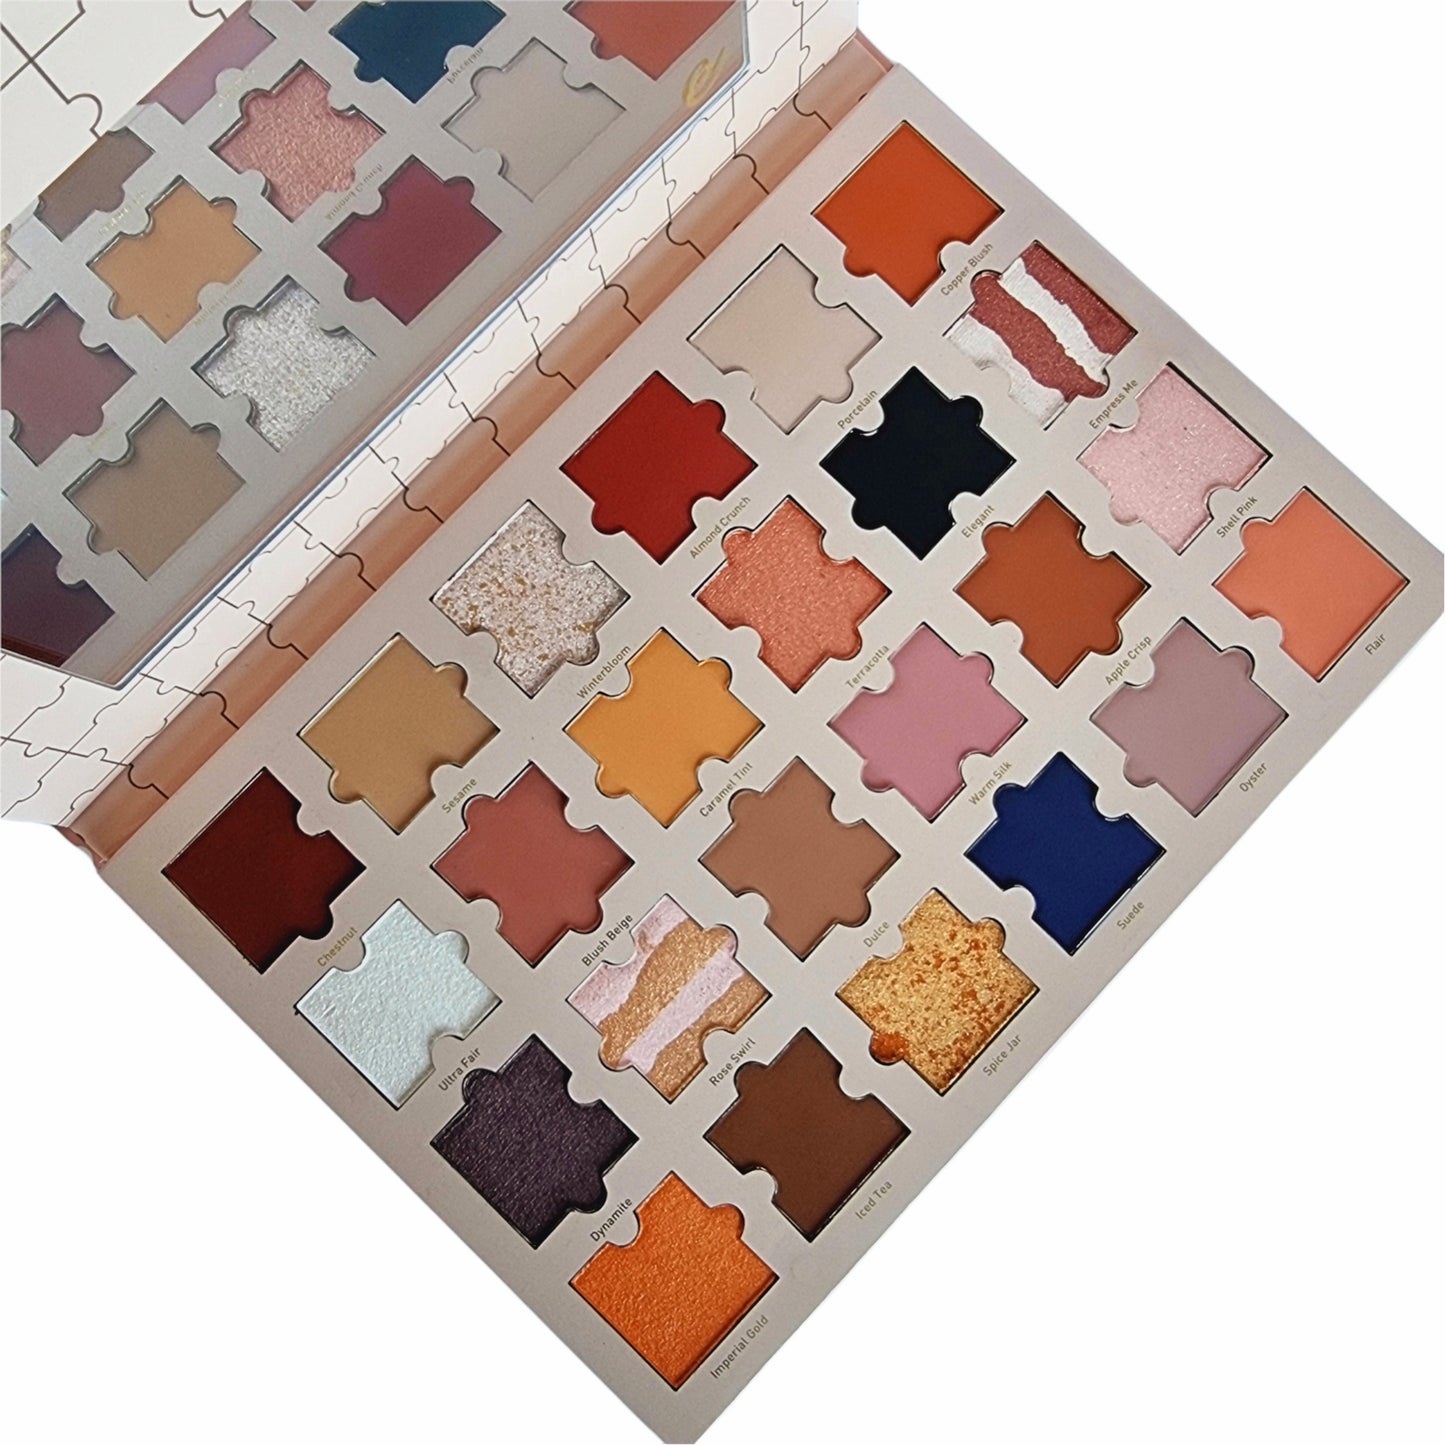 SKIN jigsaw palette